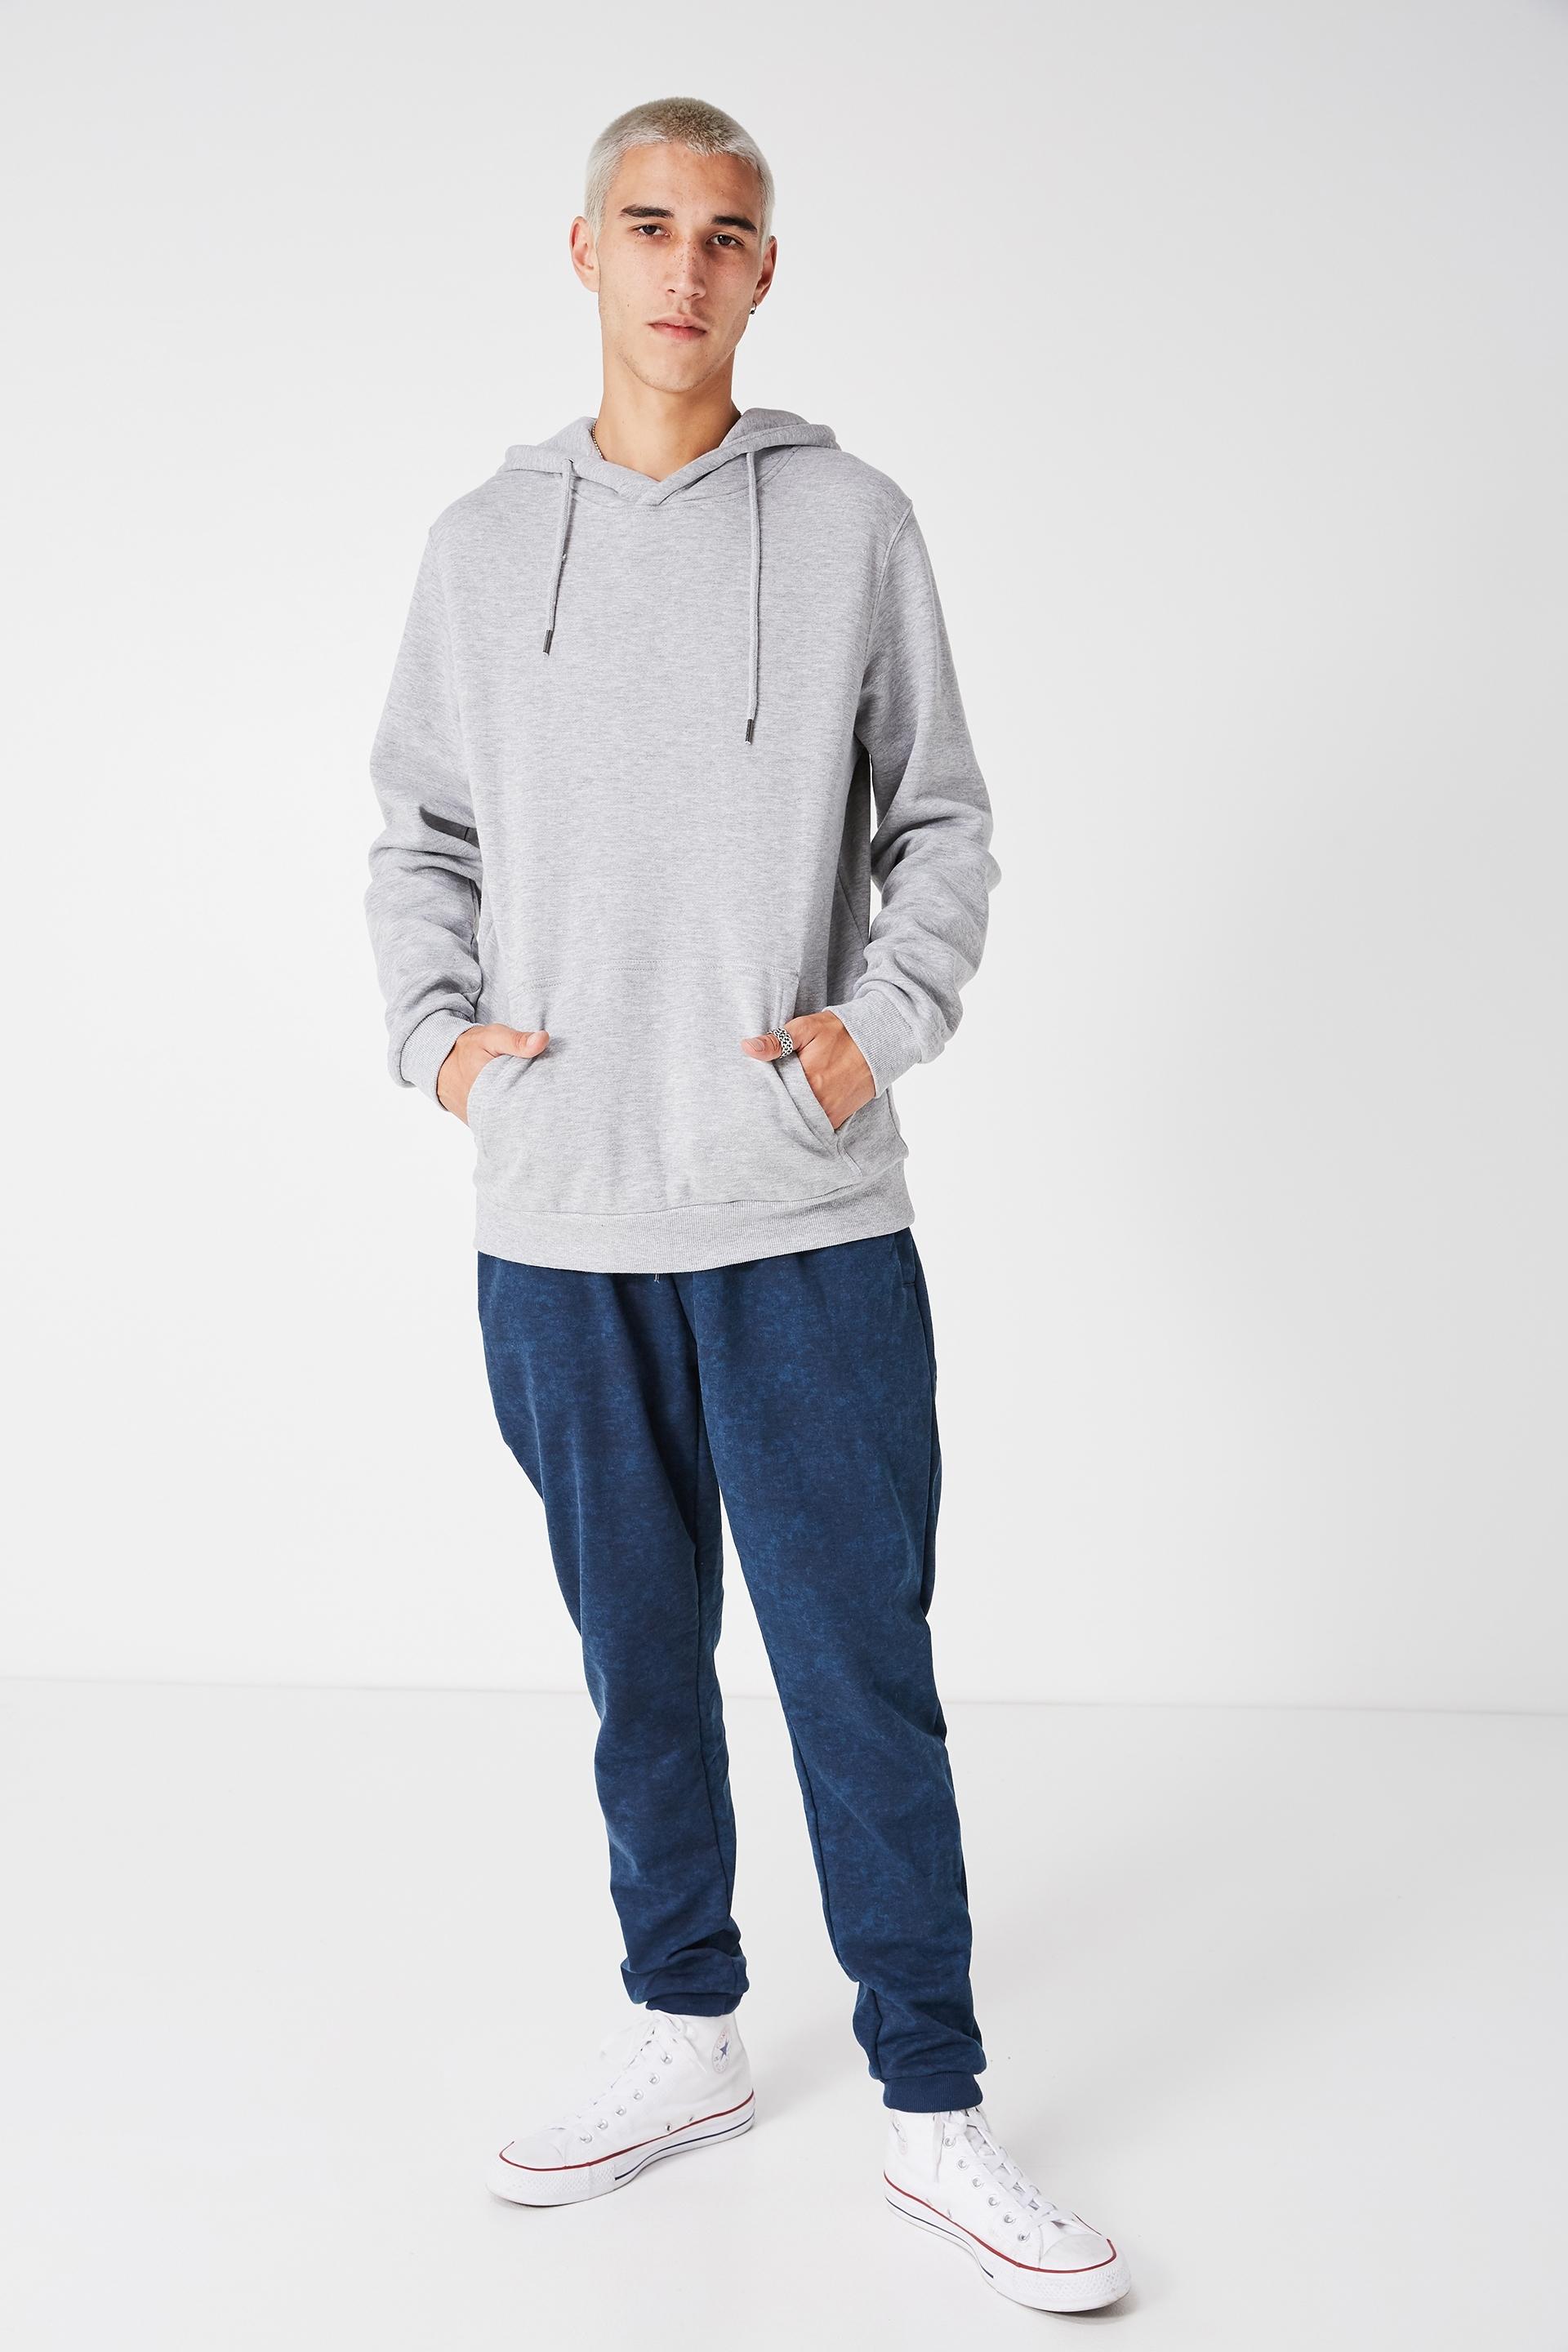 Basic hoodie - grey marle Factorie Hoodies & Sweats | Superbalist.com